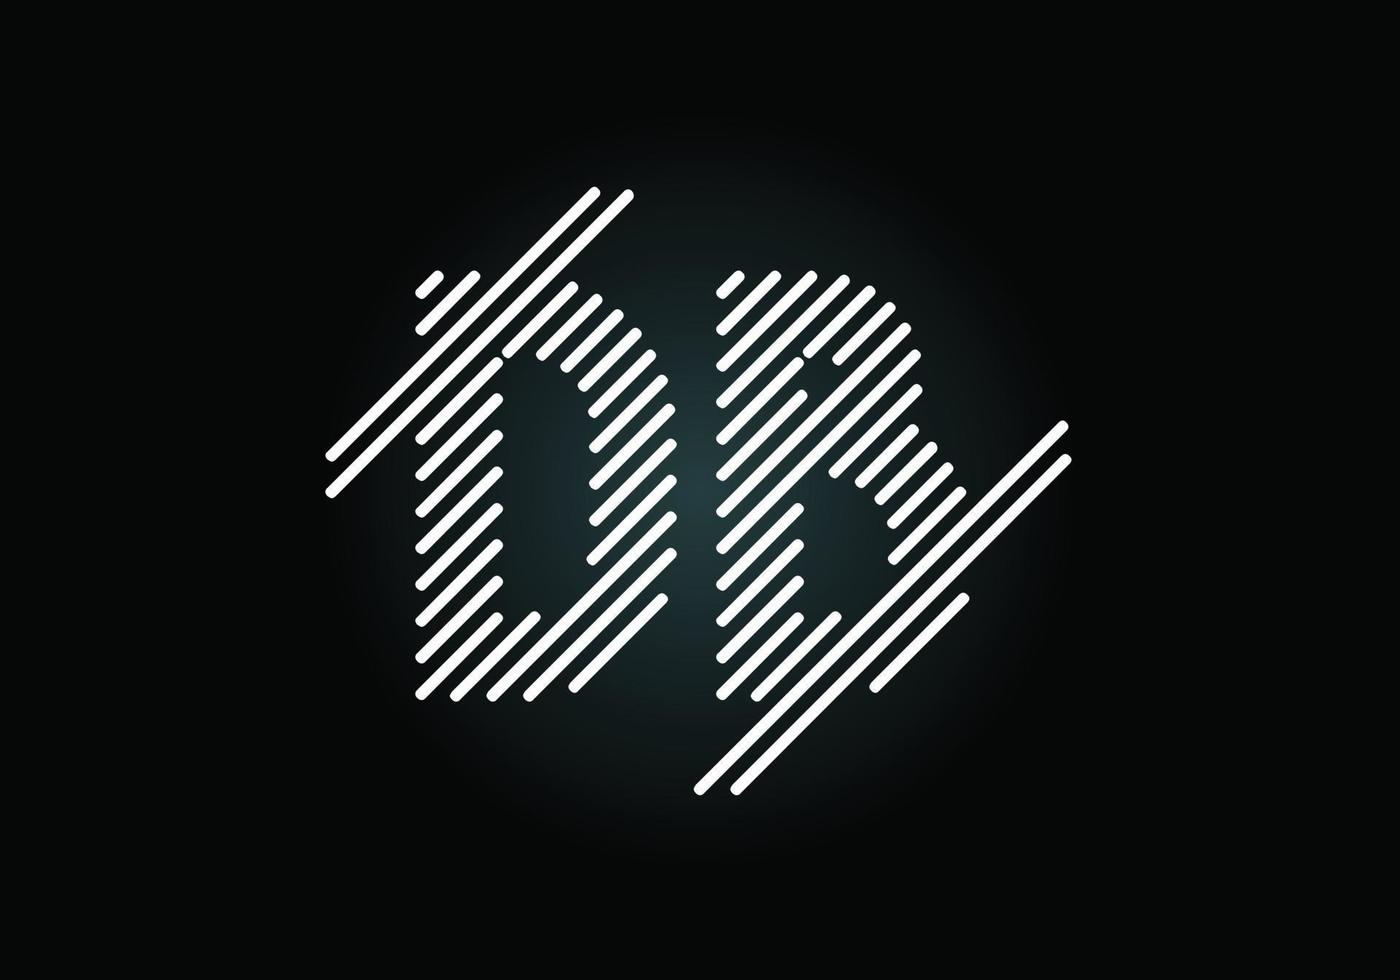 vector de diseño de logotipo de letra inicial db. símbolo del alfabeto gráfico para la identidad empresarial corporativa